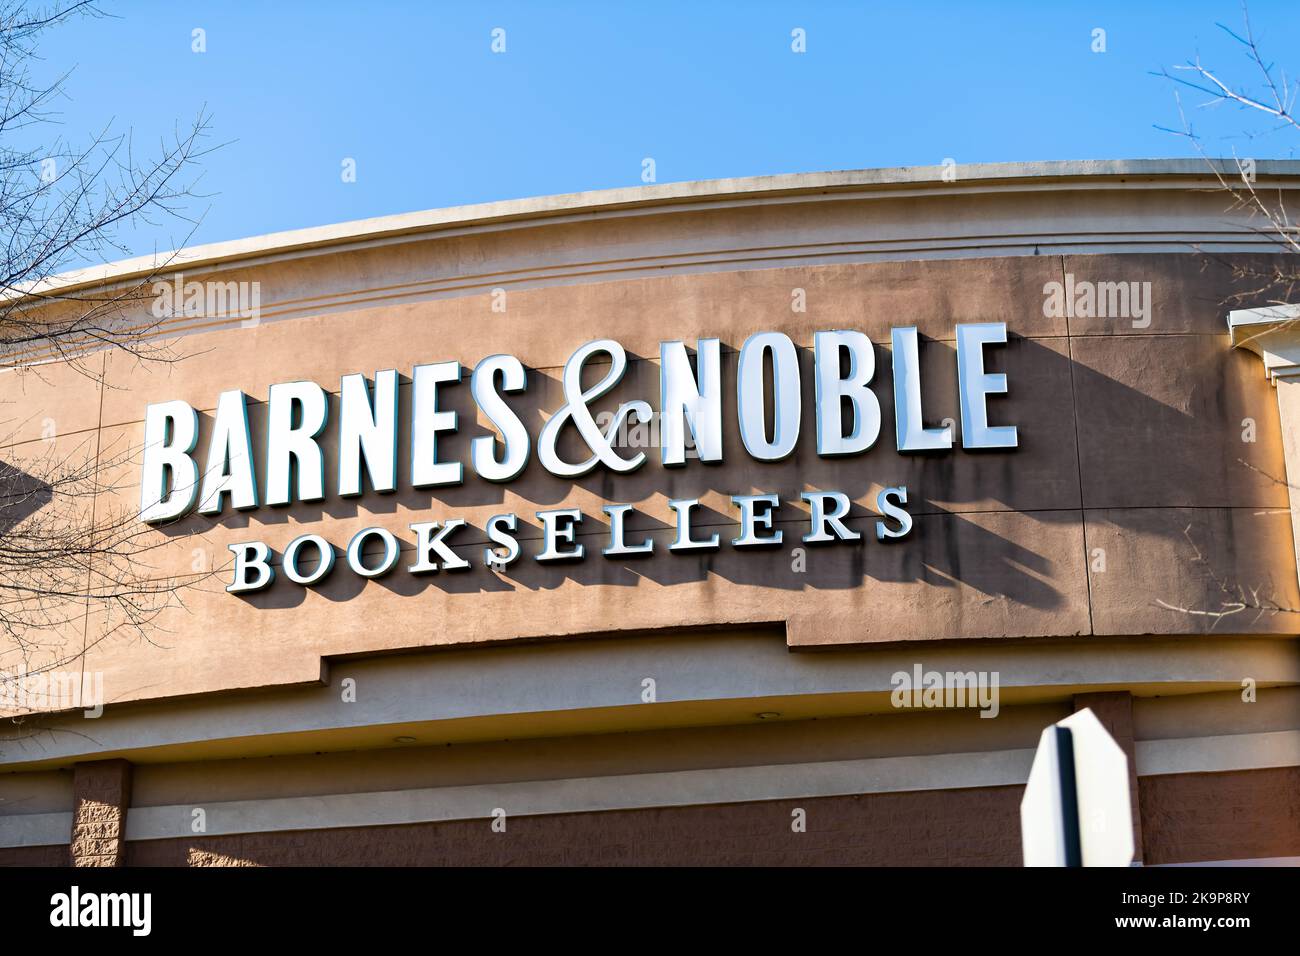 Lynchburg, Etats-Unis - 7 janvier 2021 : magasin de vente au détail Barnes & Noble avec enseigne commerciale vendant des livres en Virginie Banque D'Images